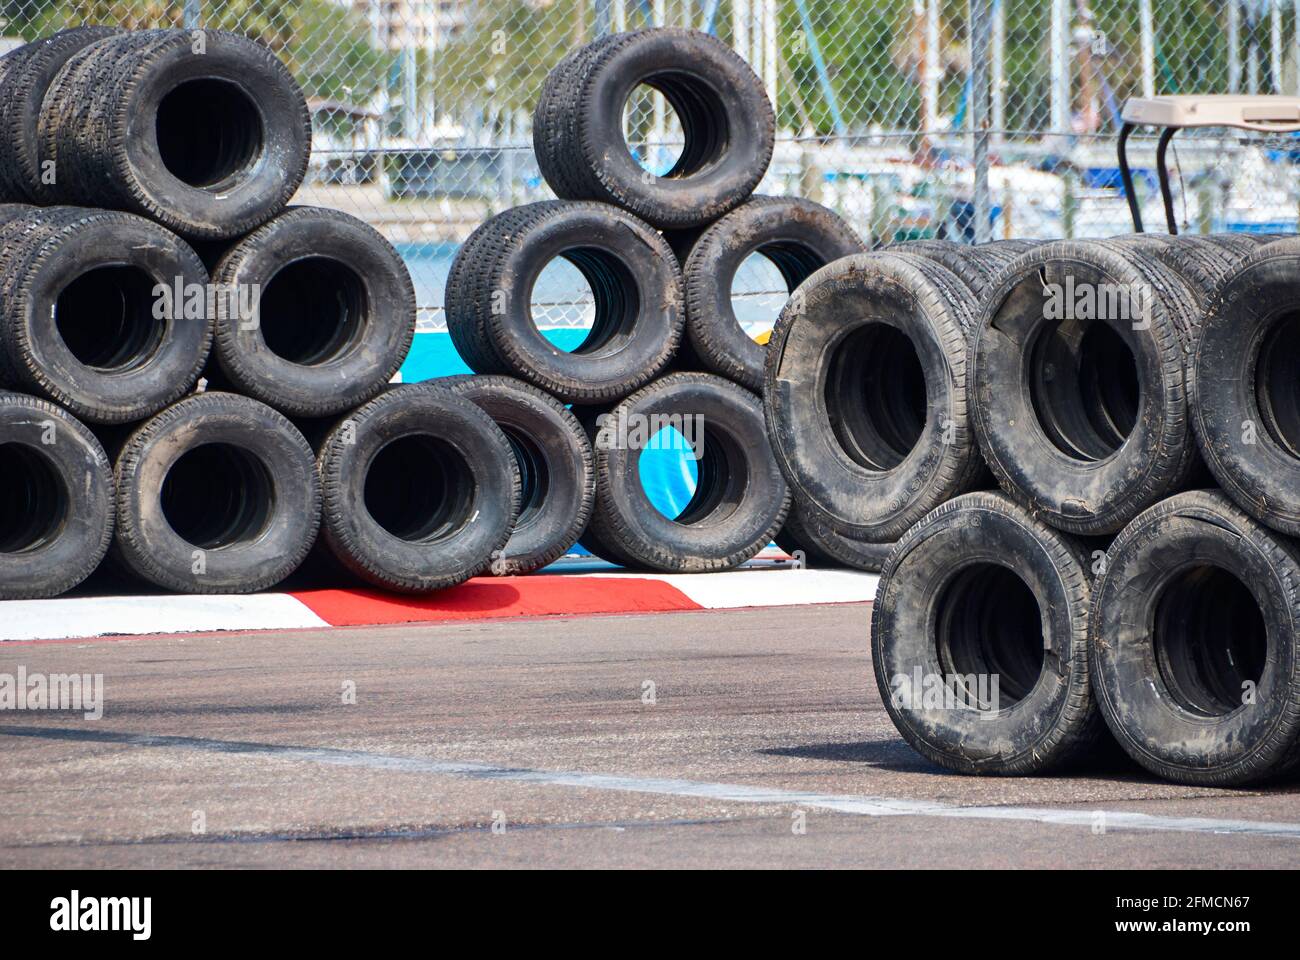 Barriera antinfortunistica per pneumatici vecchi Foto Stock